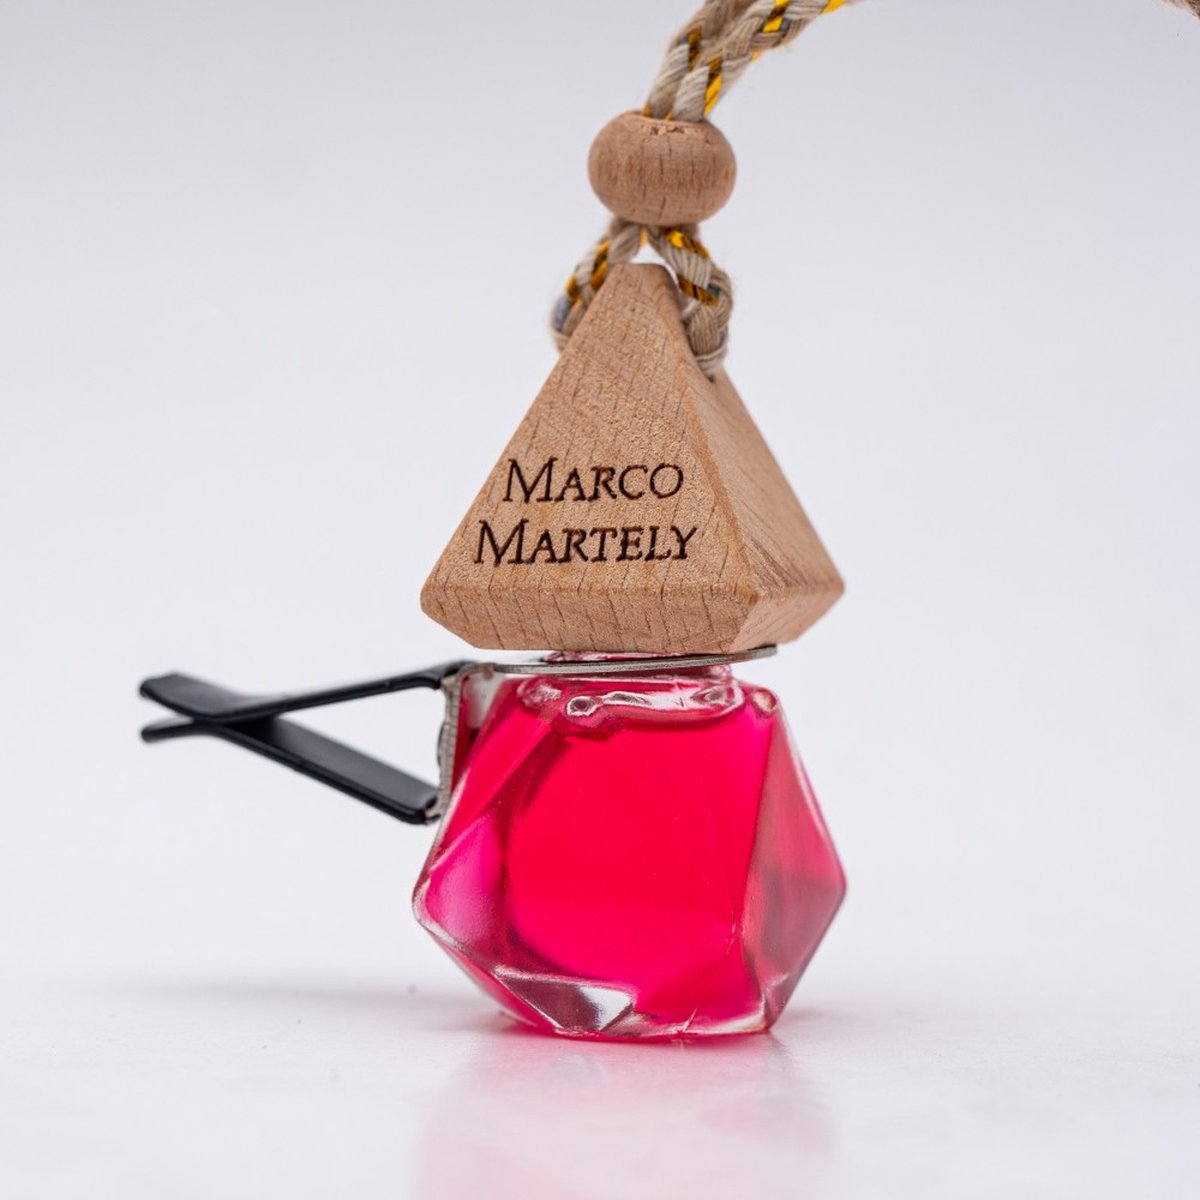 Marco Martely Dragon Fruit Multifunctioneel met hanger en houder - Autoparfum - Houtachtig - 7 ml - Autogeur - Autogeurverfrisser